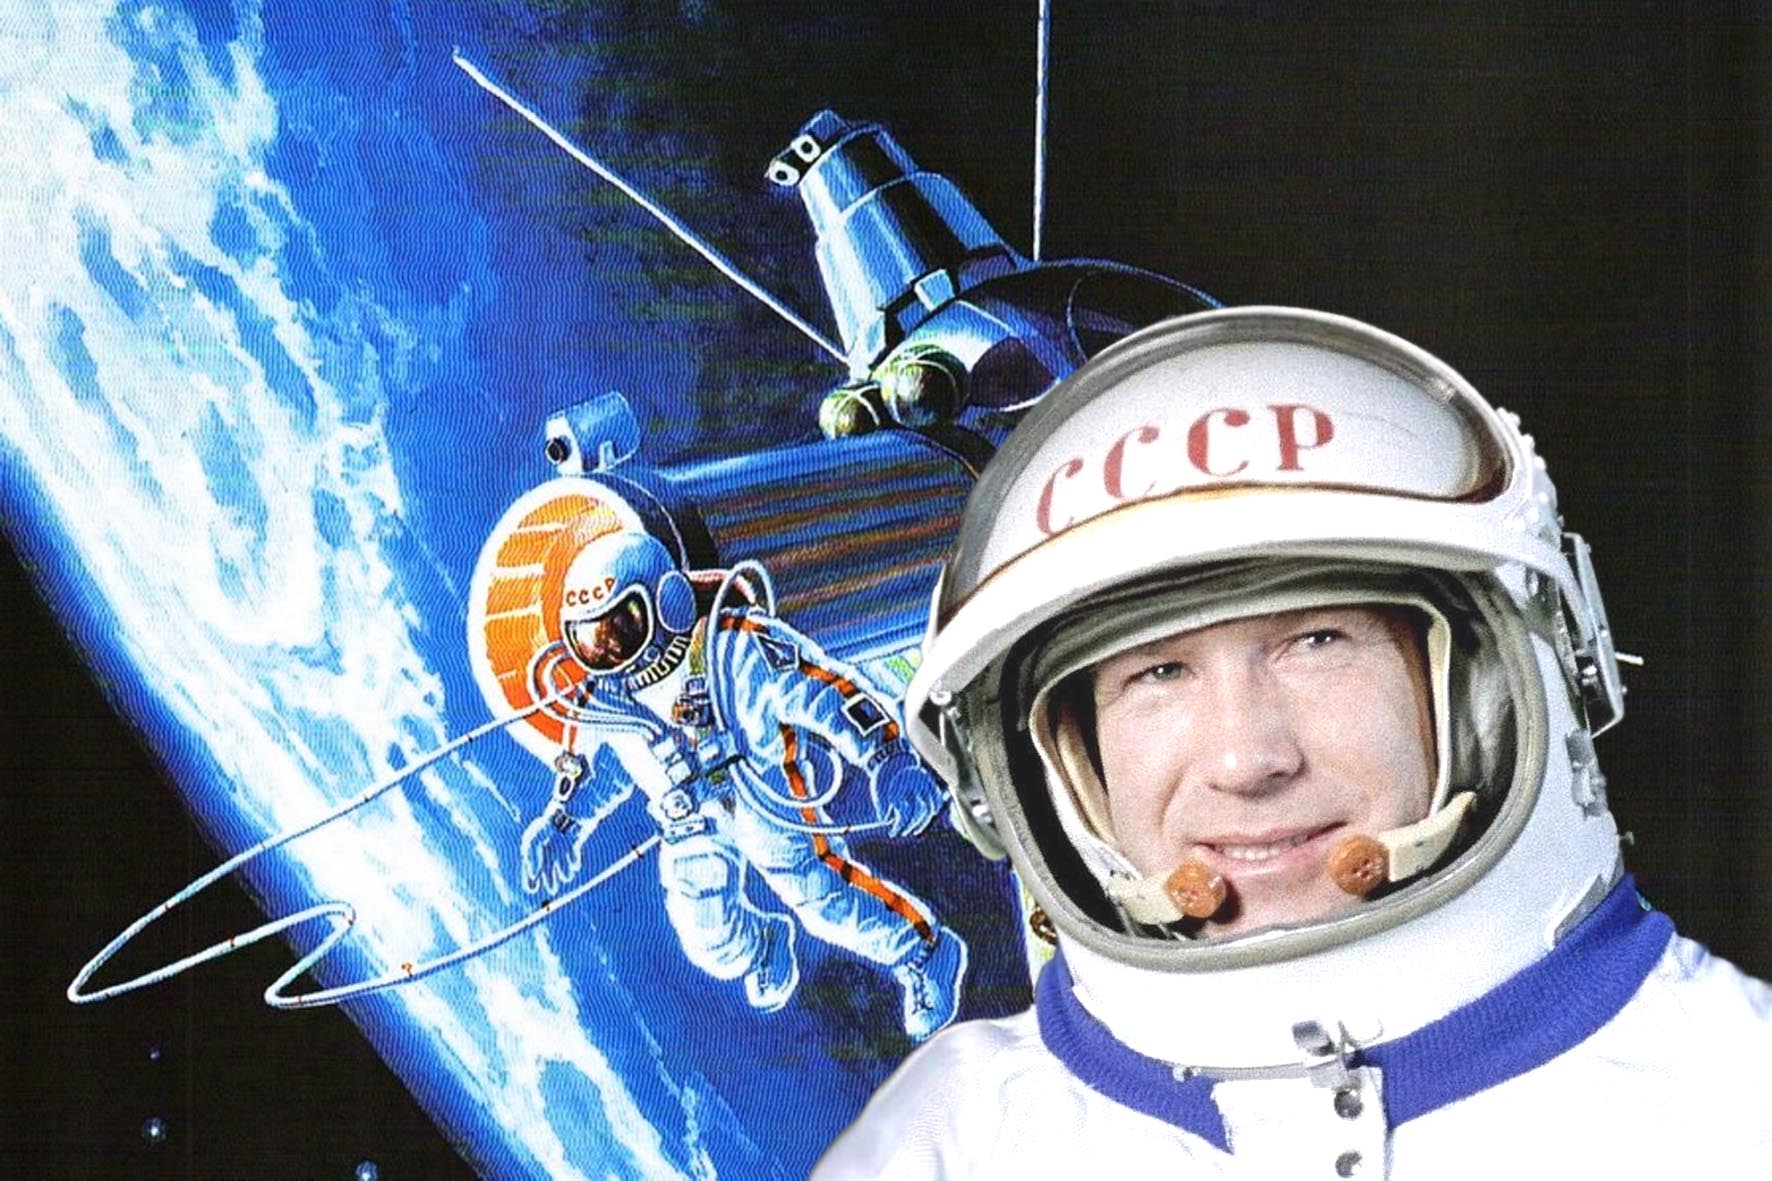 Первый выход человека в космос дата. Выход в открытый космос Алексея Архиповича Леонова.